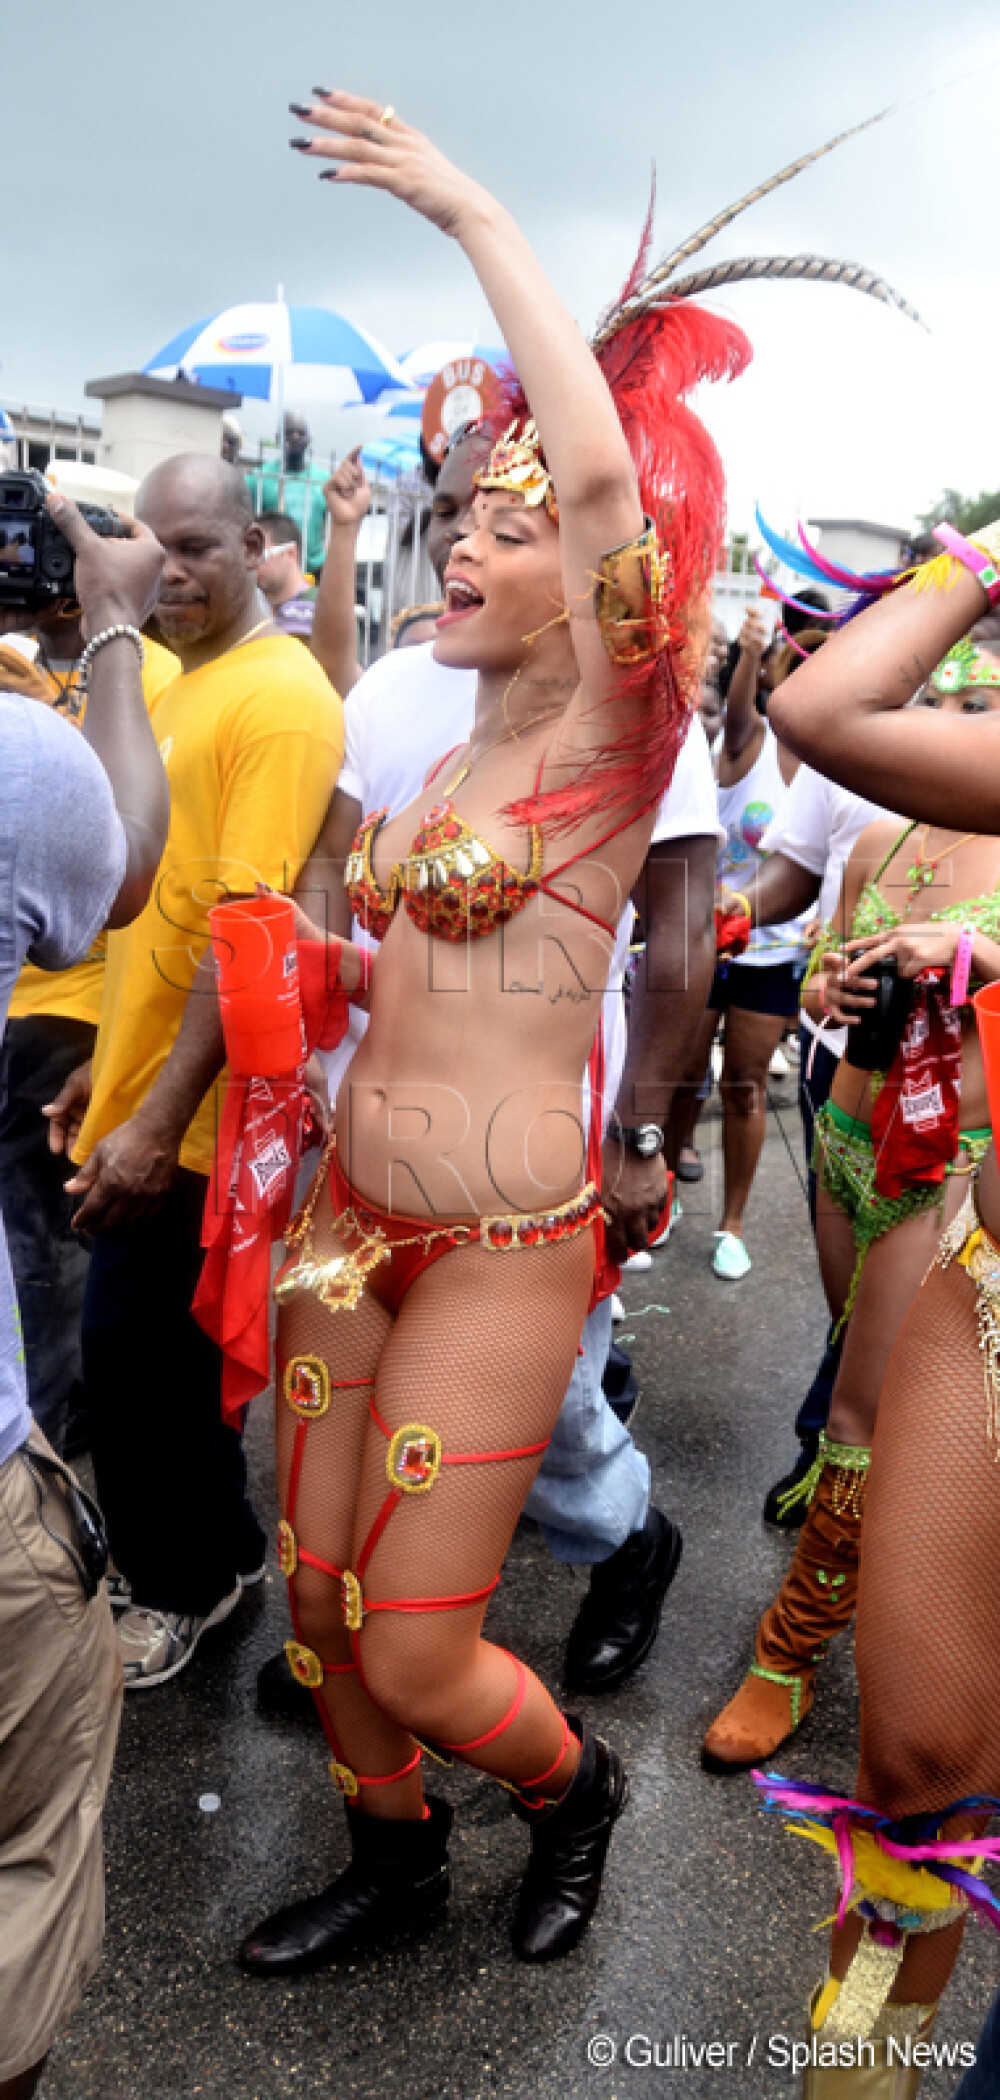 Fara inhibitii. Rihanna incita imaginatia barbatilor, la carnavalul din Barbados. GALERIE FOTO - Imaginea 3